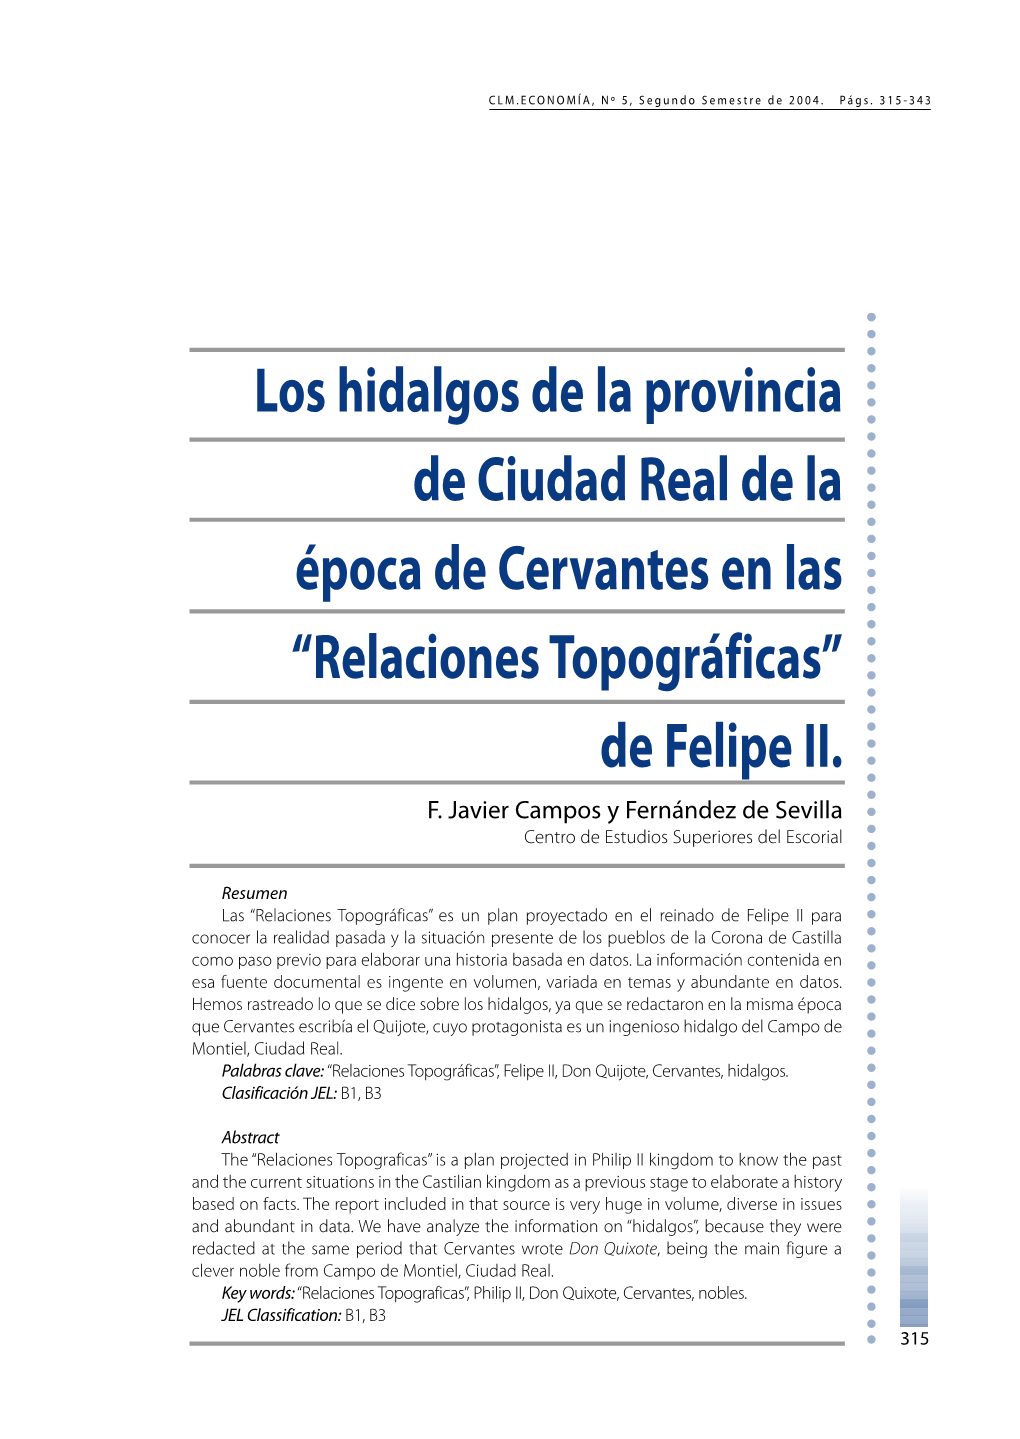 Los Hidalgos De La Provincia De Ciudad Real De La Época De Cervantes En Las “Relaciones Topográficas” De Felipe II